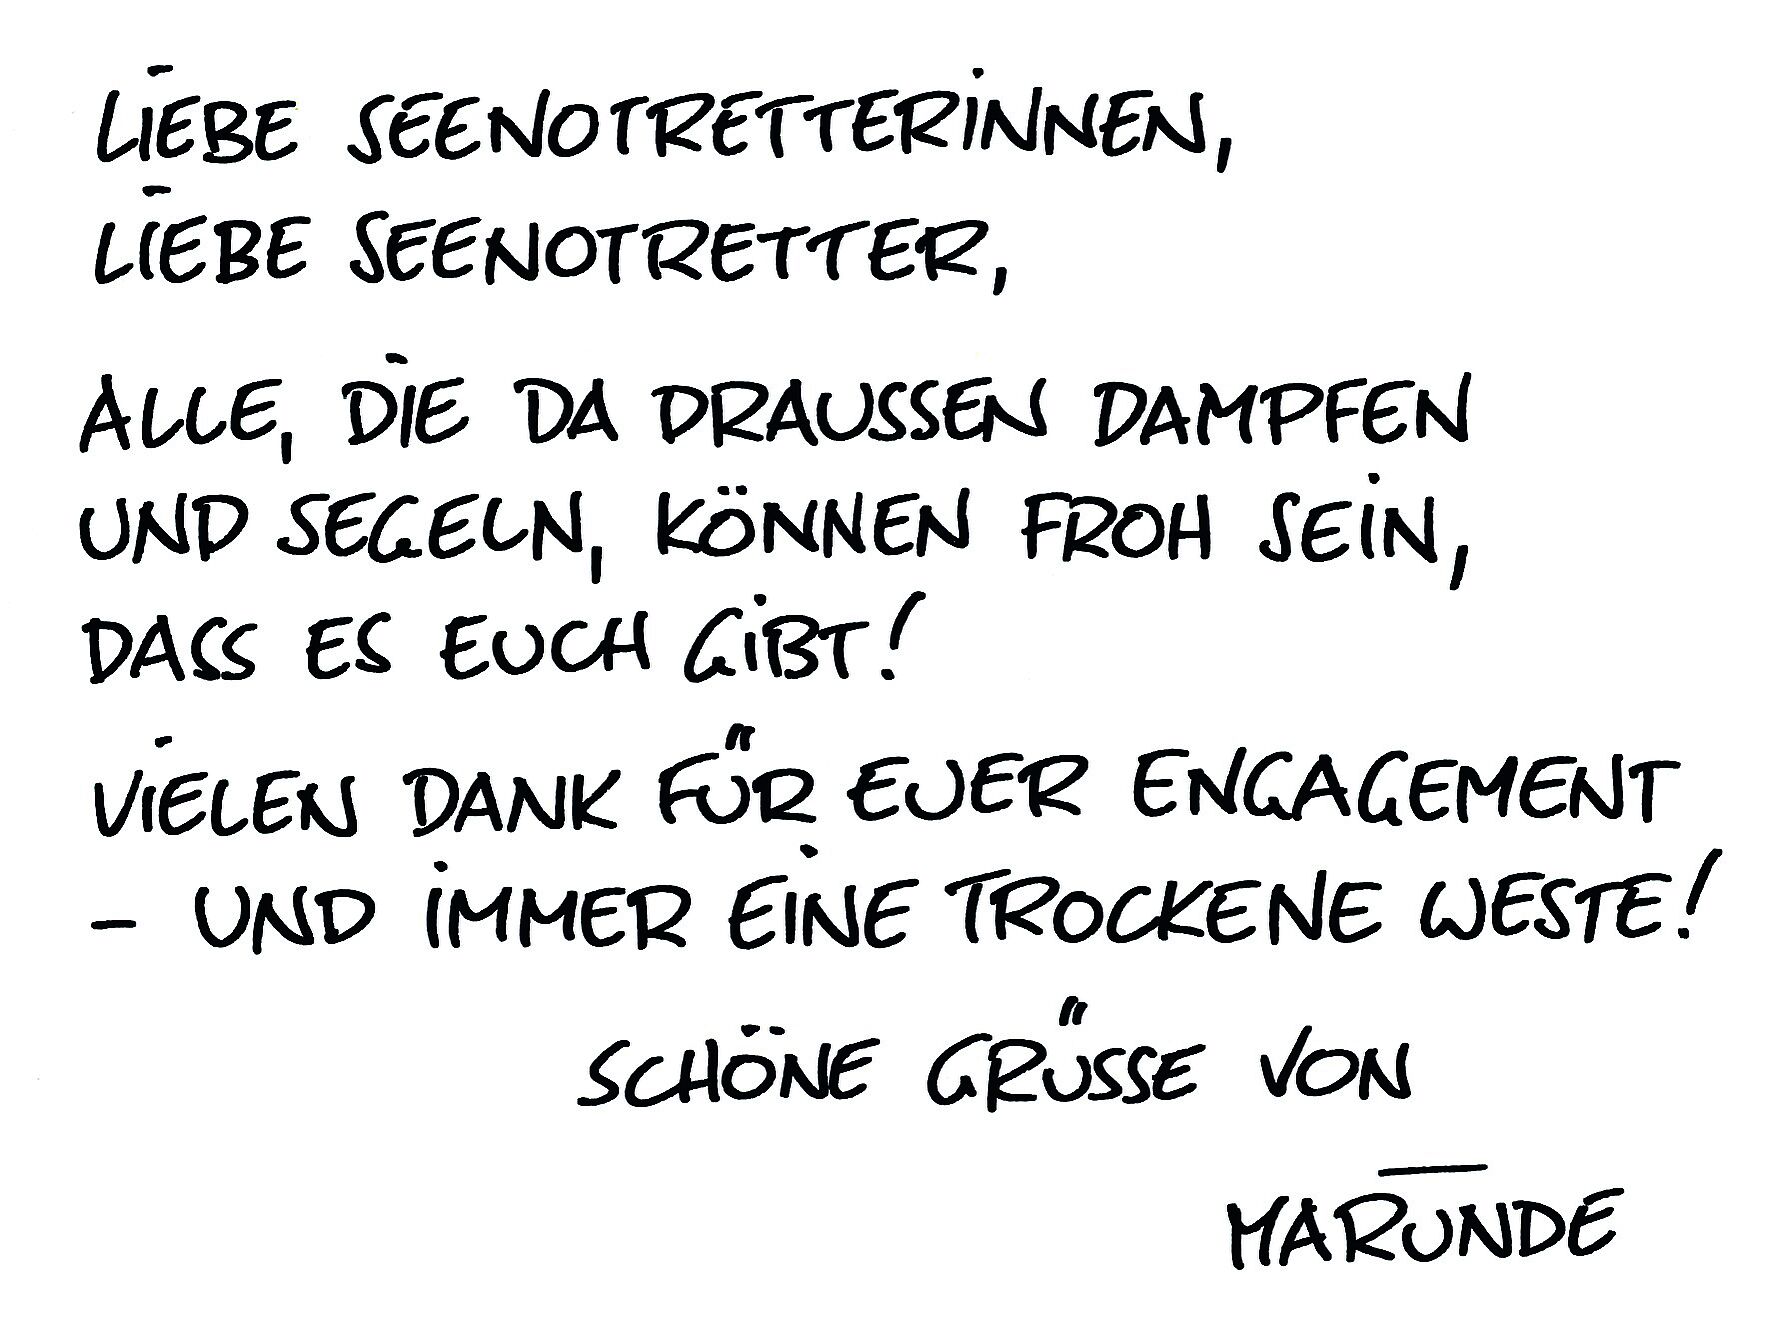 Ein handschriftliches Zitat des Cartoonisten und Seenotretter-Botschafter Wolf-Rüdiger Marunde